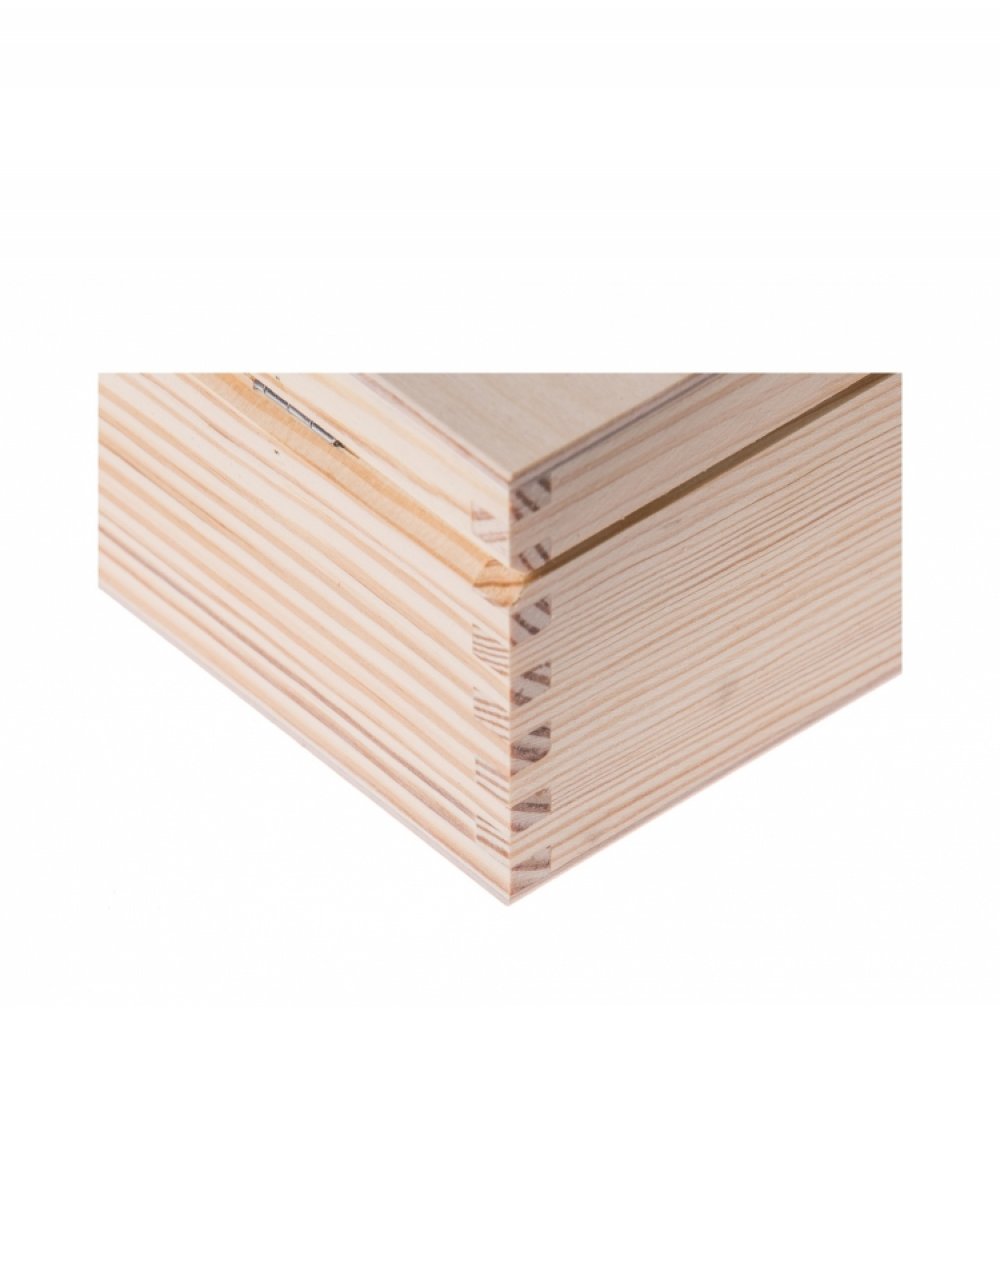 Přírodní dřevěná krabička 15x15x6 cm